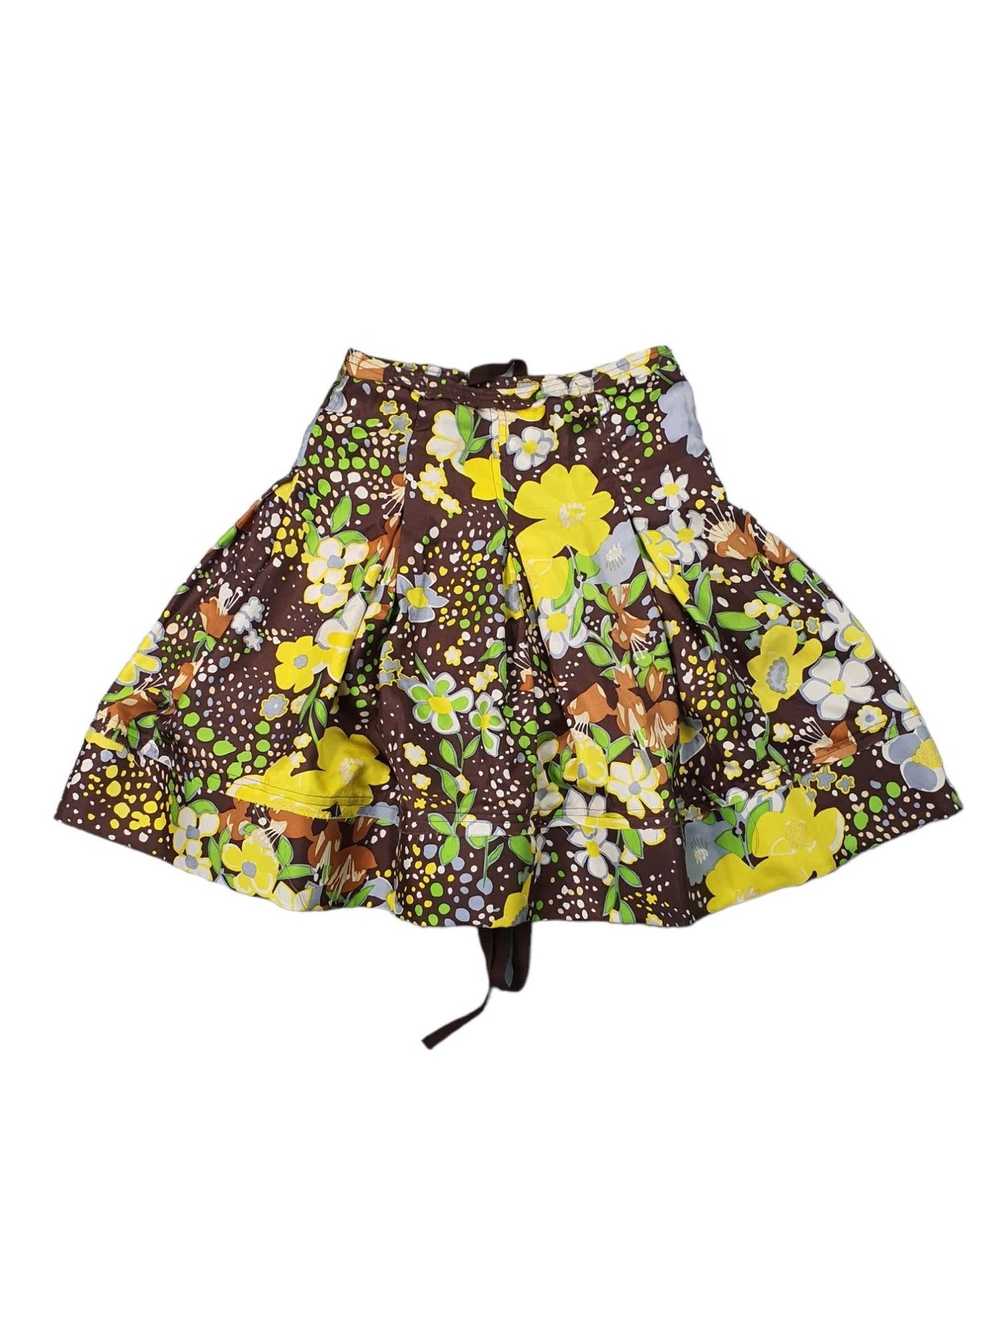 Patrizia Pepe Brown Floral Pattern Silk Skirt Siz… - image 1